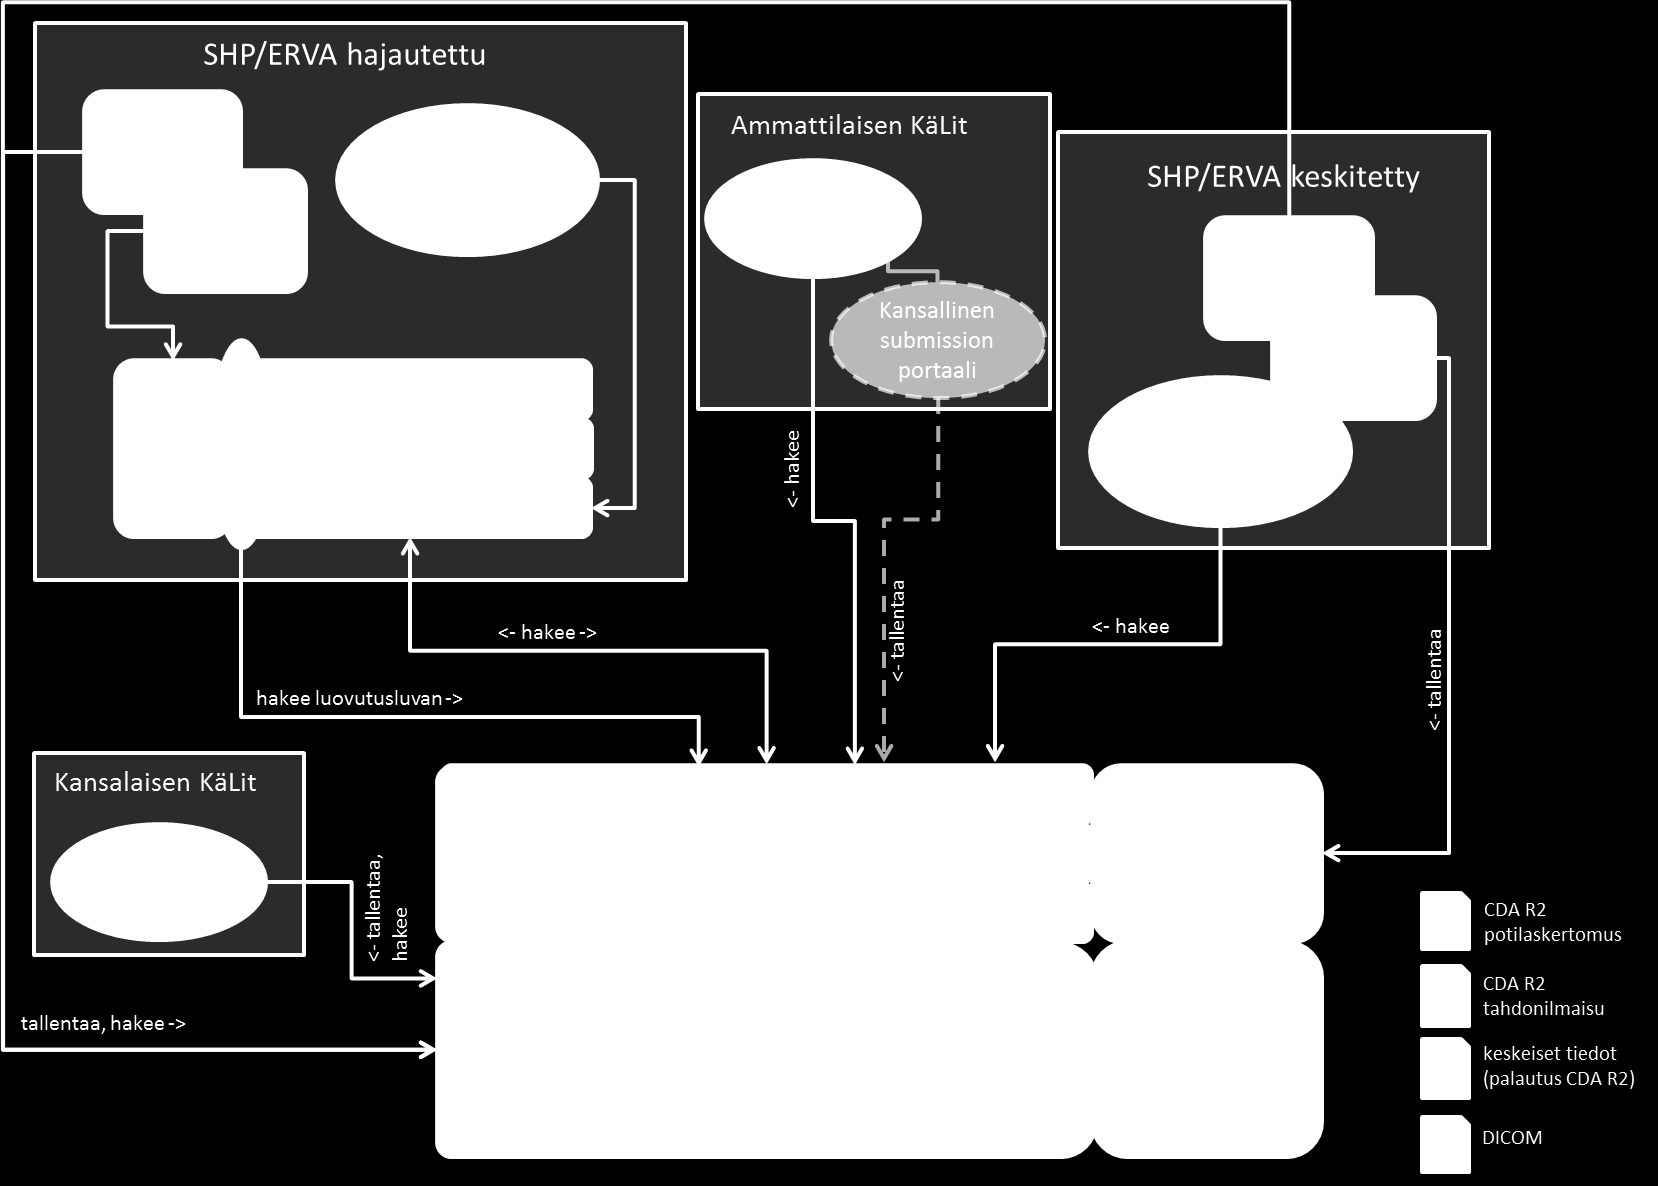 Kuva 5: Hajautetut XDS-infrastruktuurit ja Kanta-arkkitehtuuri Kuvassa 5 on esitetty Kvarkkiin arkistoivan toimijan (SHP/ERVA keskitetty) lisäksi myös oman alueellisen XDS-infrastruktuurin omaava